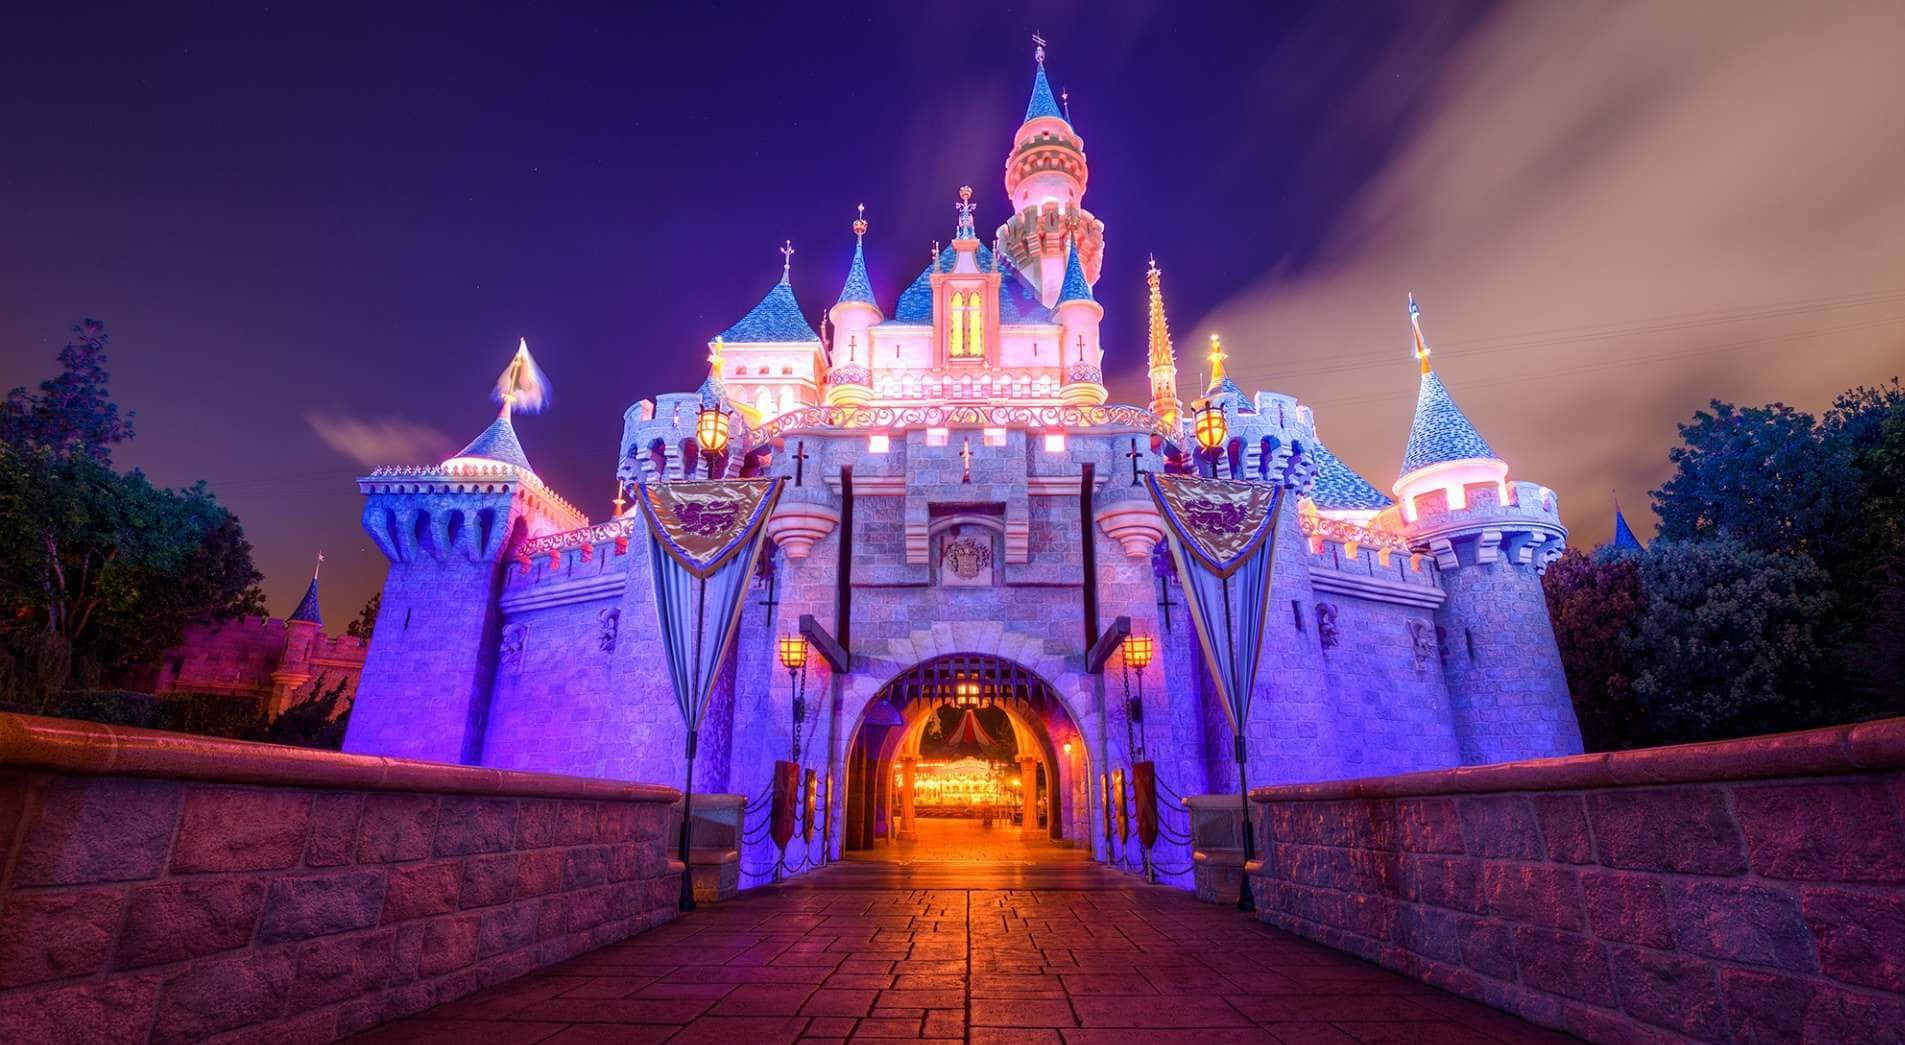 Viajaa Un Mundo De Sueños E Imaginación En El Castillo De Disney